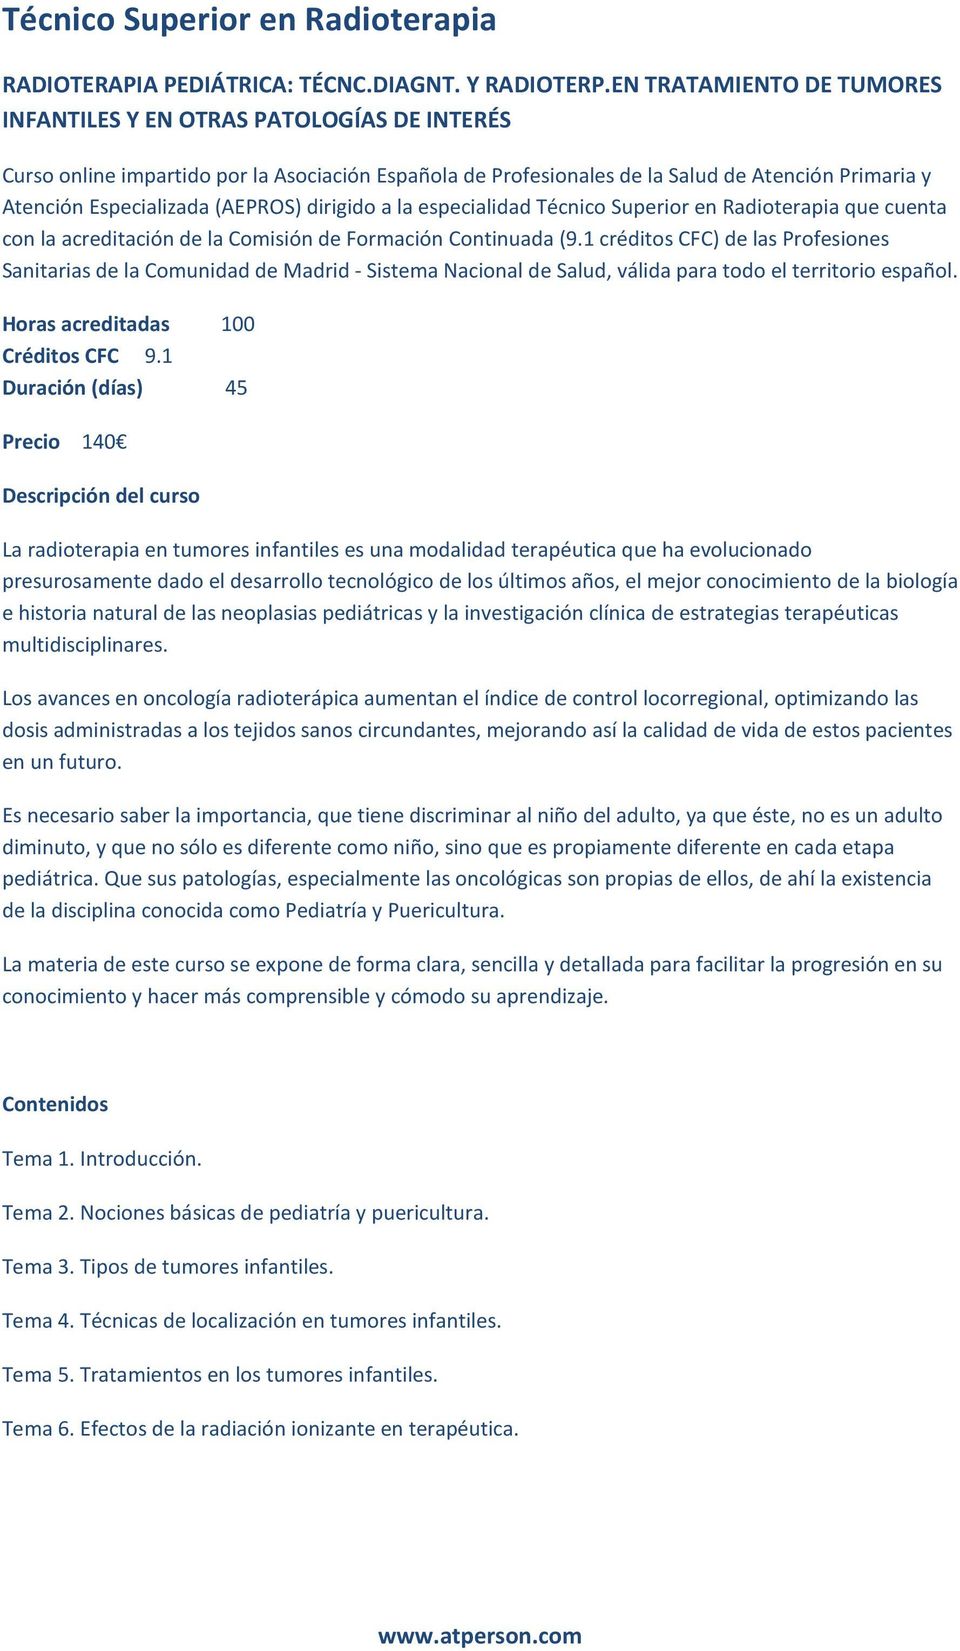 Comisión de Formación Continuada (9.1 créditos CFC) de las Profesiones Sanitarias de la Comunidad de Madrid - Sistema Nacional de Salud, válida para todo el territorio español. Créditos CFC 9.